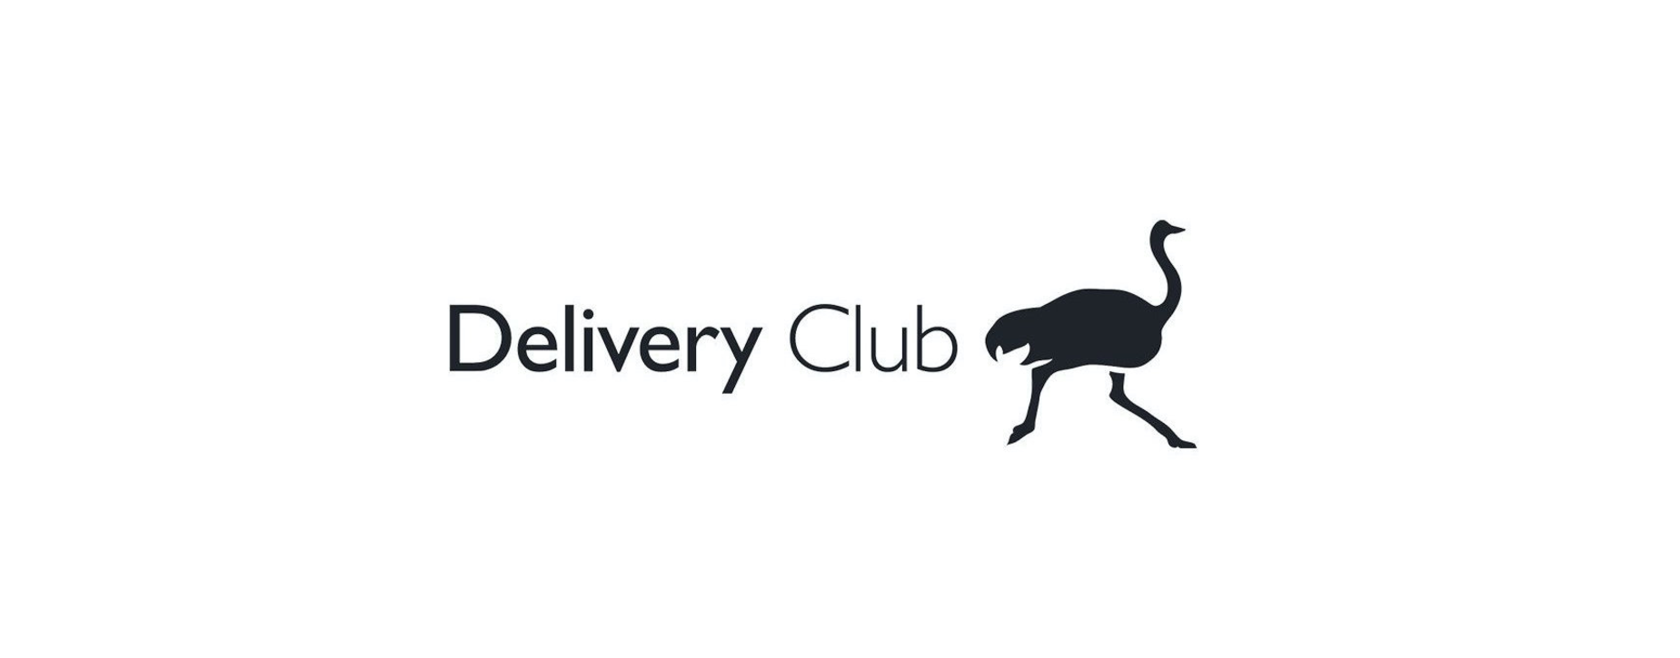 Значок Деливери. Delivery Club лого. Страус Деливери. Деливери клаб на прозрачном фоне.